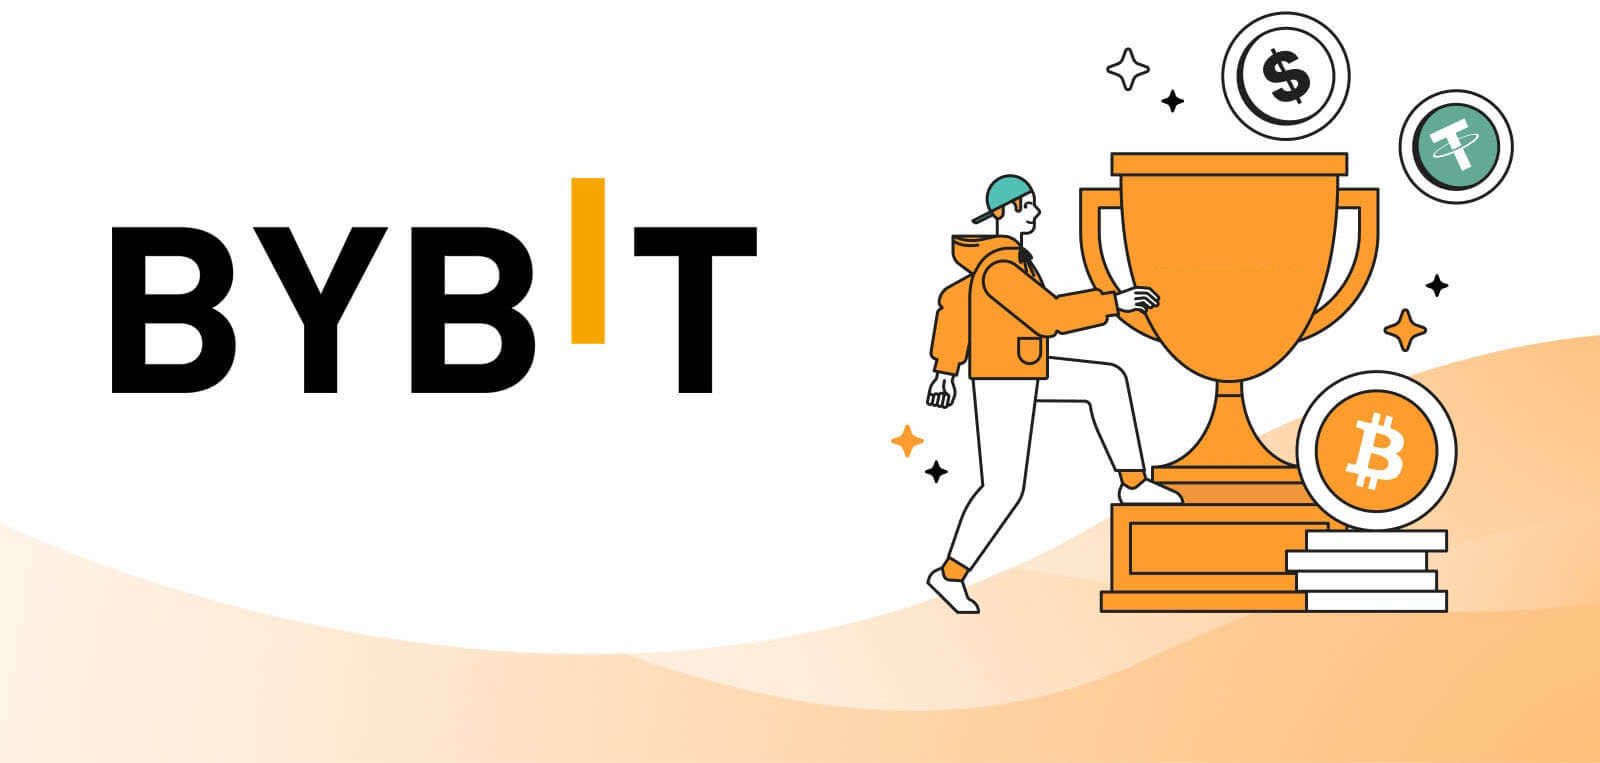 Bybit 交易红利和优惠券 - 高达 90 美元的用户福利